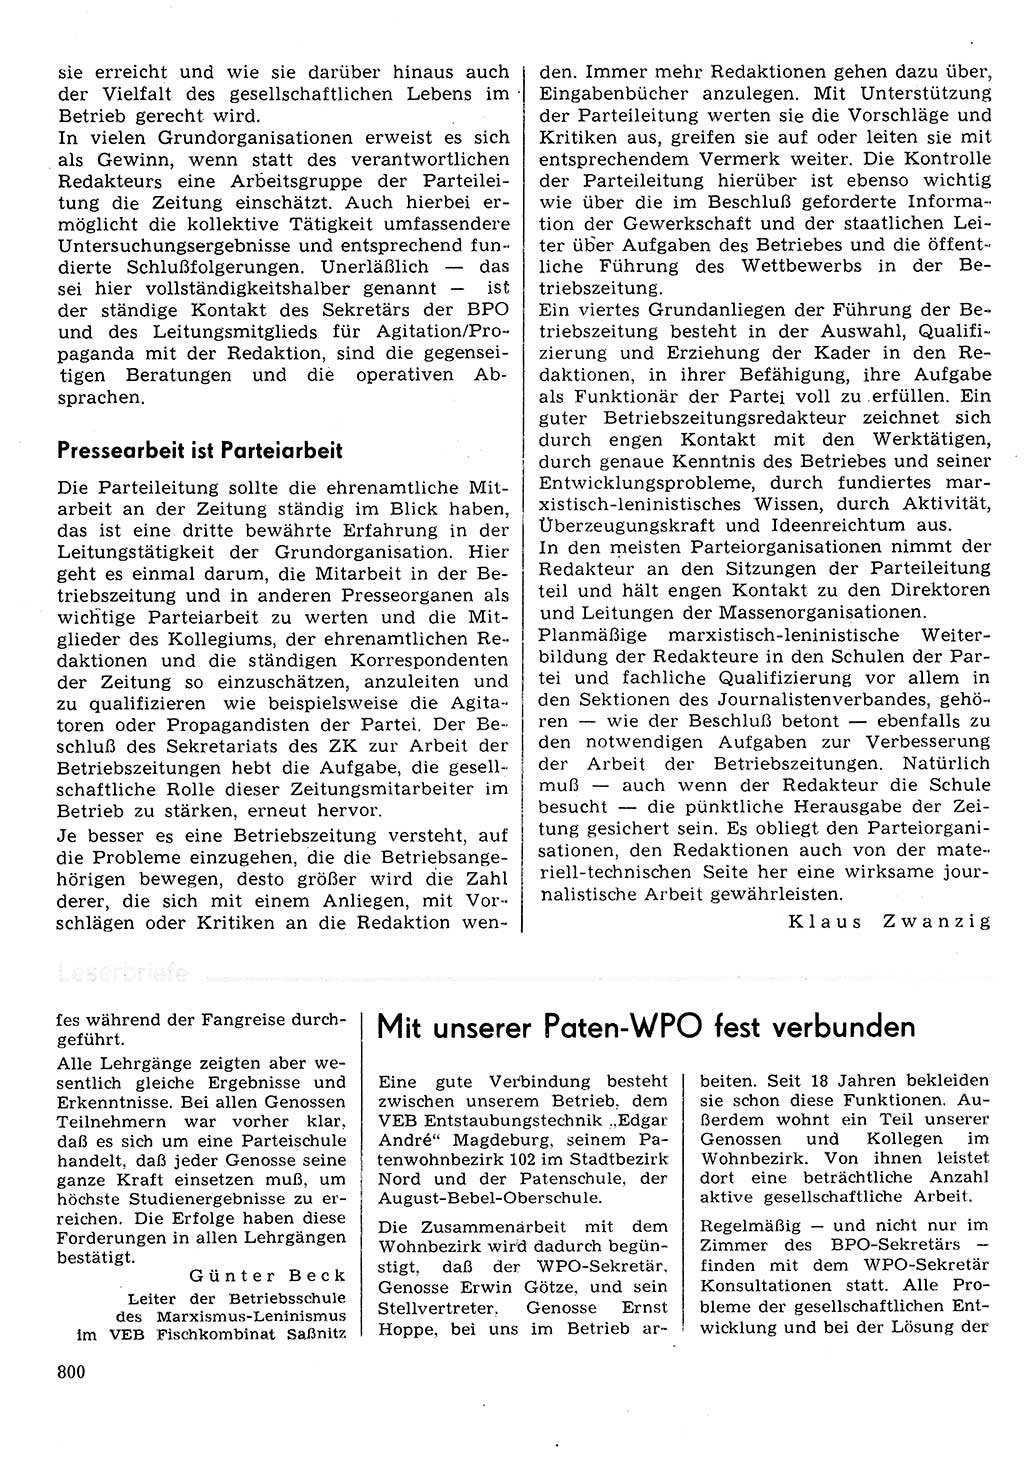 Neuer Weg (NW), Organ des Zentralkomitees (ZK) der SED (Sozialistische Einheitspartei Deutschlands) für Fragen des Parteilebens, 30. Jahrgang [Deutsche Demokratische Republik (DDR)] 1975, Seite 800 (NW ZK SED DDR 1975, S. 800)